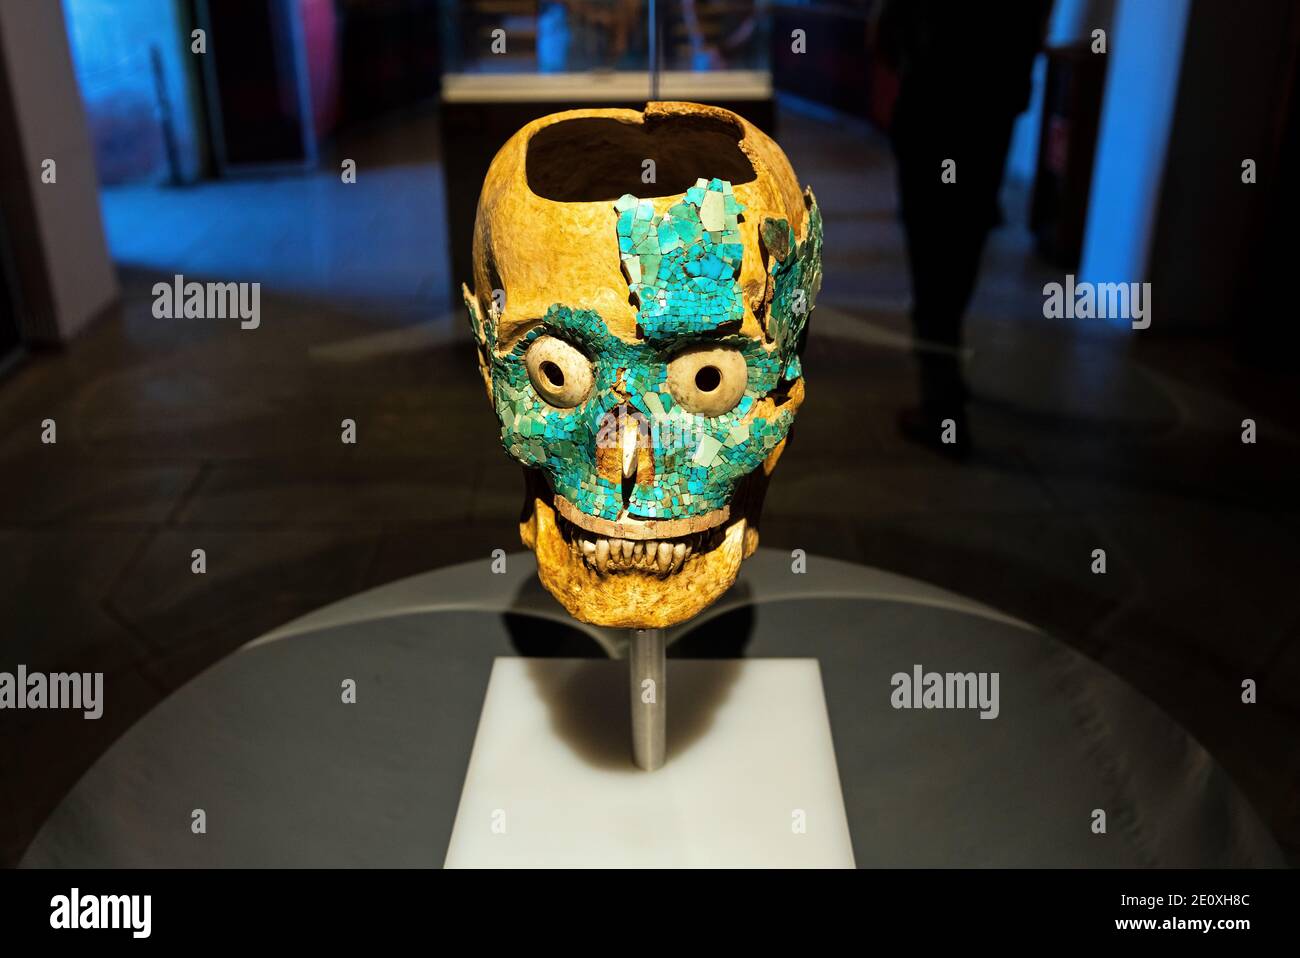 Cranio con maschera di morte incrostata turchese della civiltà Zapotec Mixtec ritrovata nella tomba 7 a Monte Alban, Oaxaca, Messico. Foto Stock